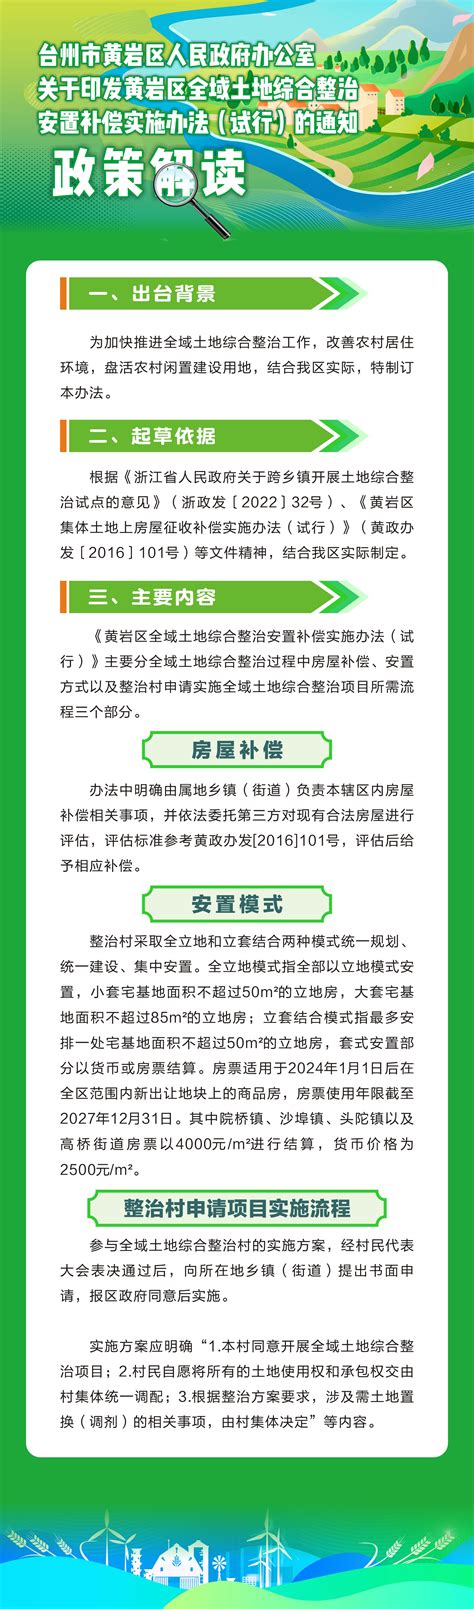 台州市黄岩区人民政府关于加强2019年高考中考期间环境噪声监管及部分路段实施交通管制的通告--今日黄岩